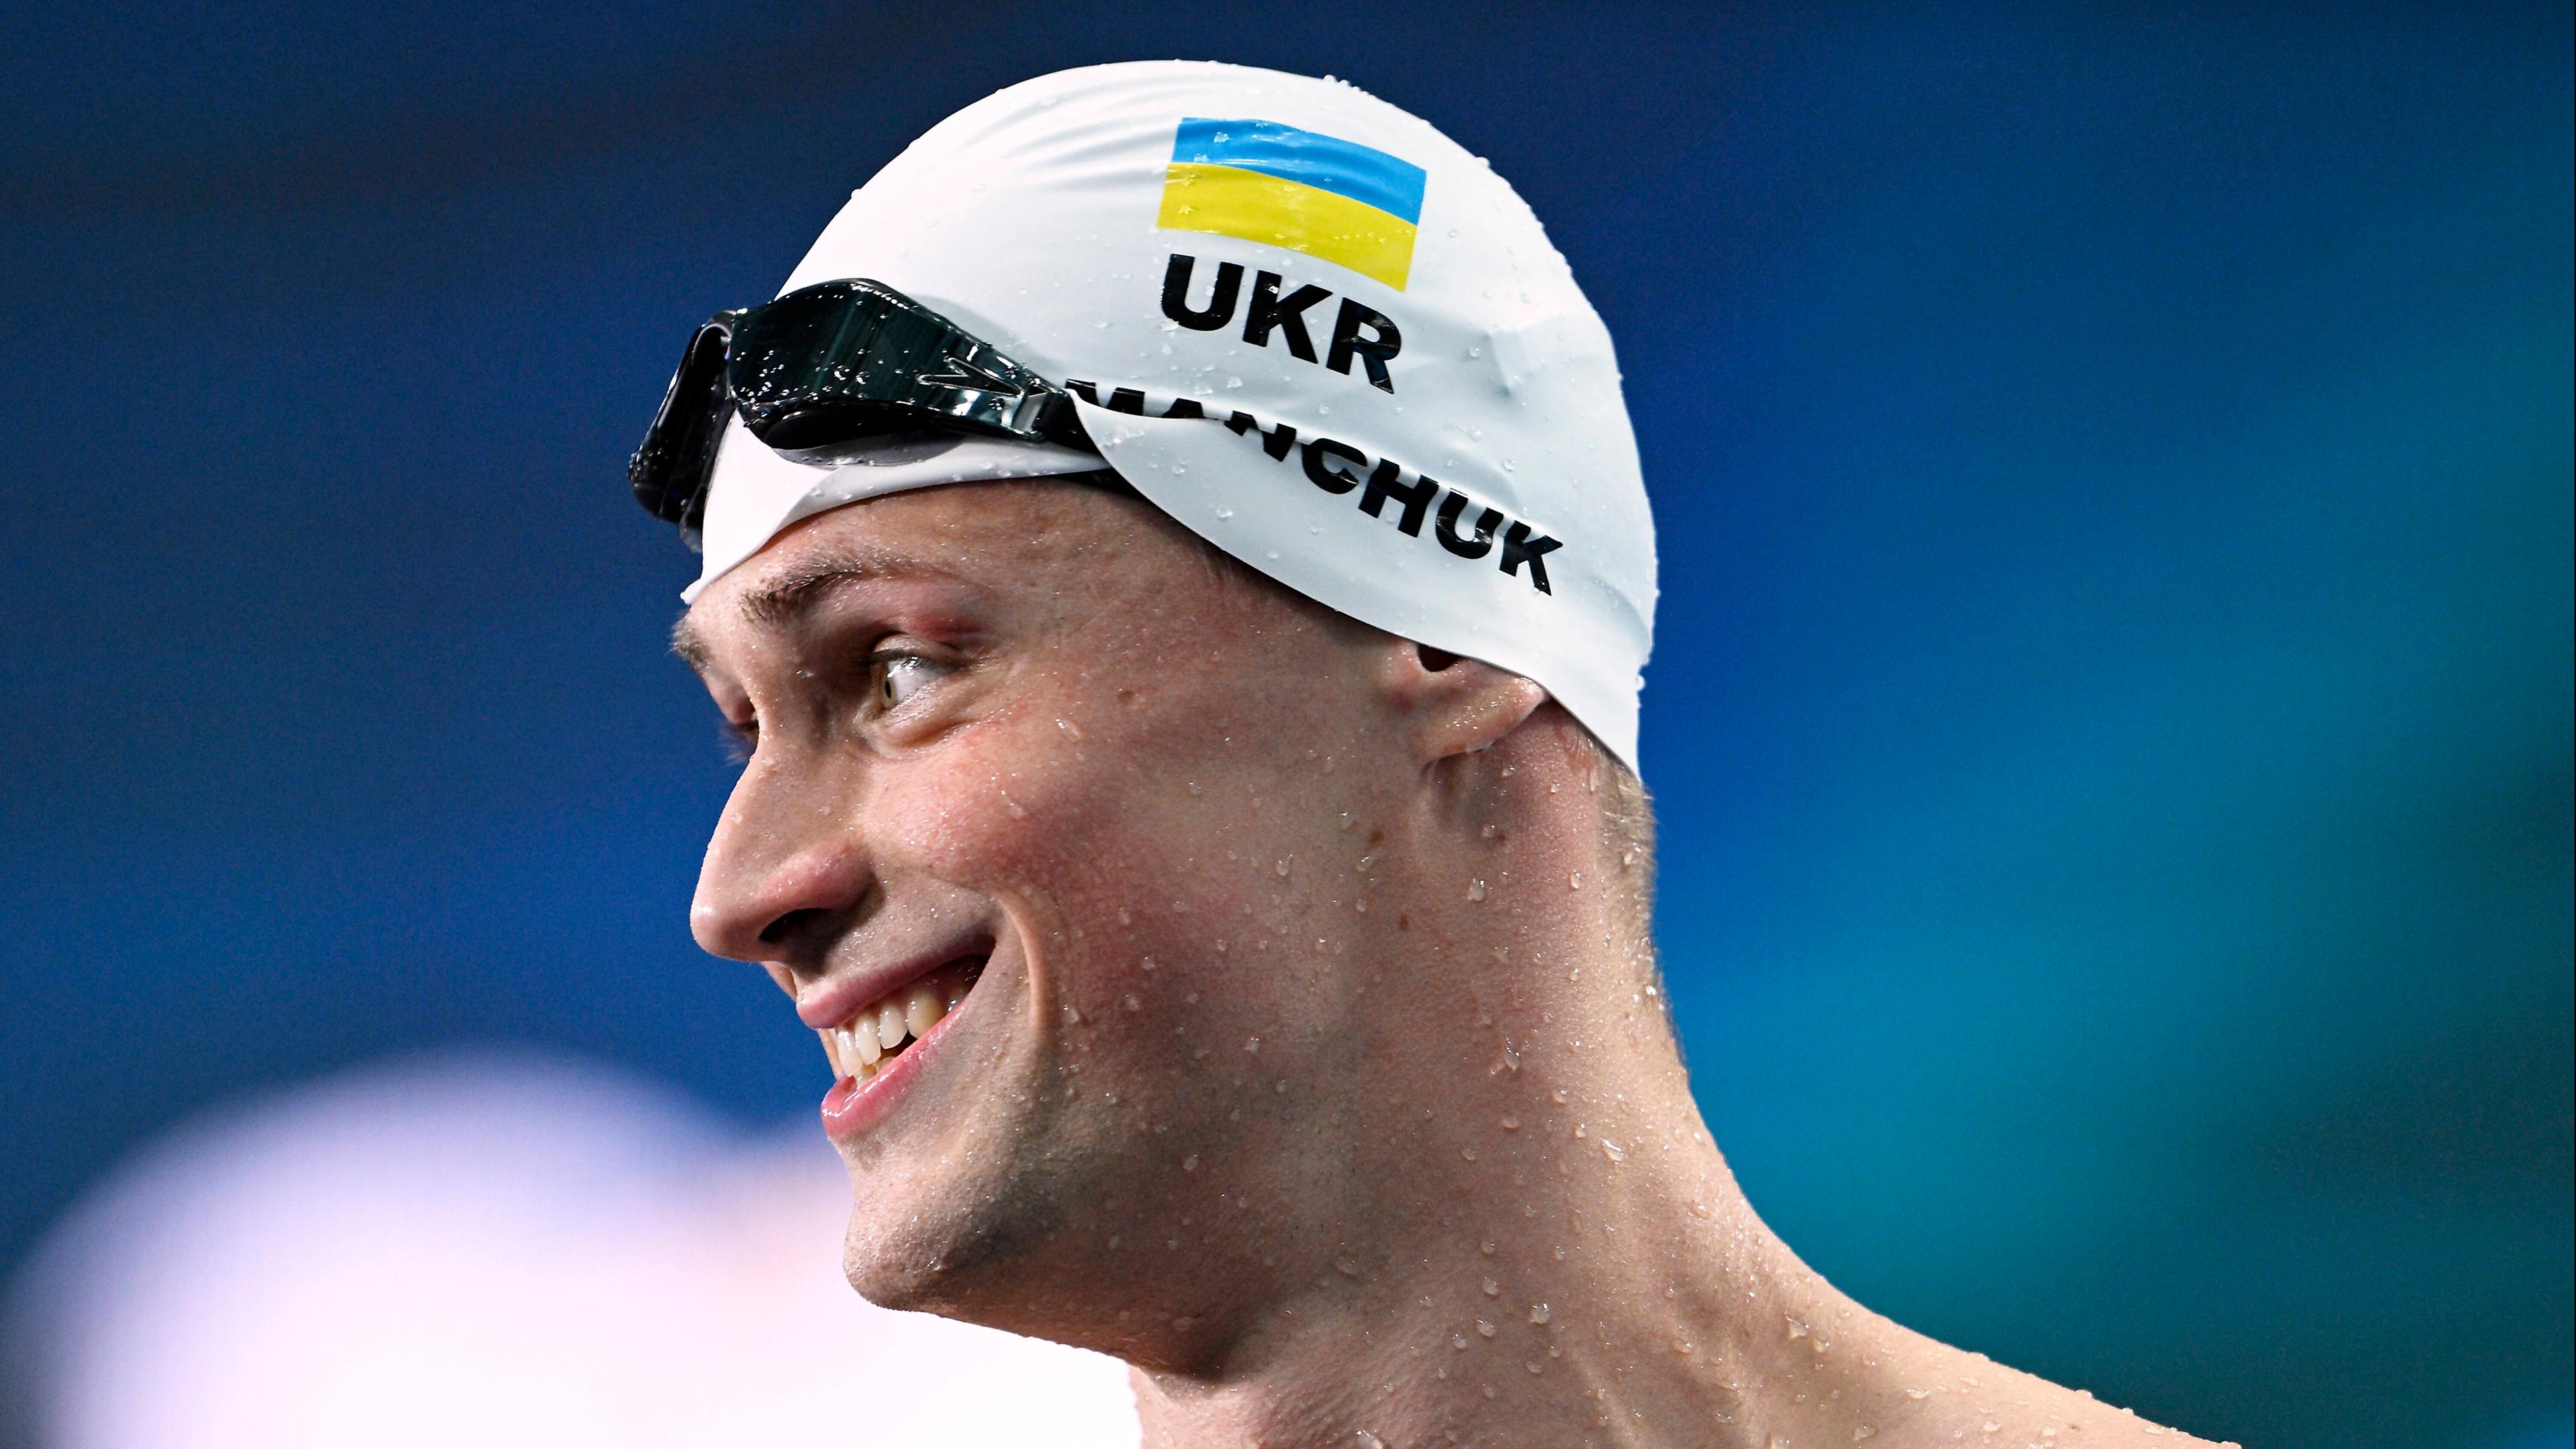 Schwimm-Ass Mychajlo Romantschuk komplettiert das Fahnenträger-Duo für die Ukraine. Der 27-Jährige gewann bei den letzten Spielen Olympia-Silber und Bronze.